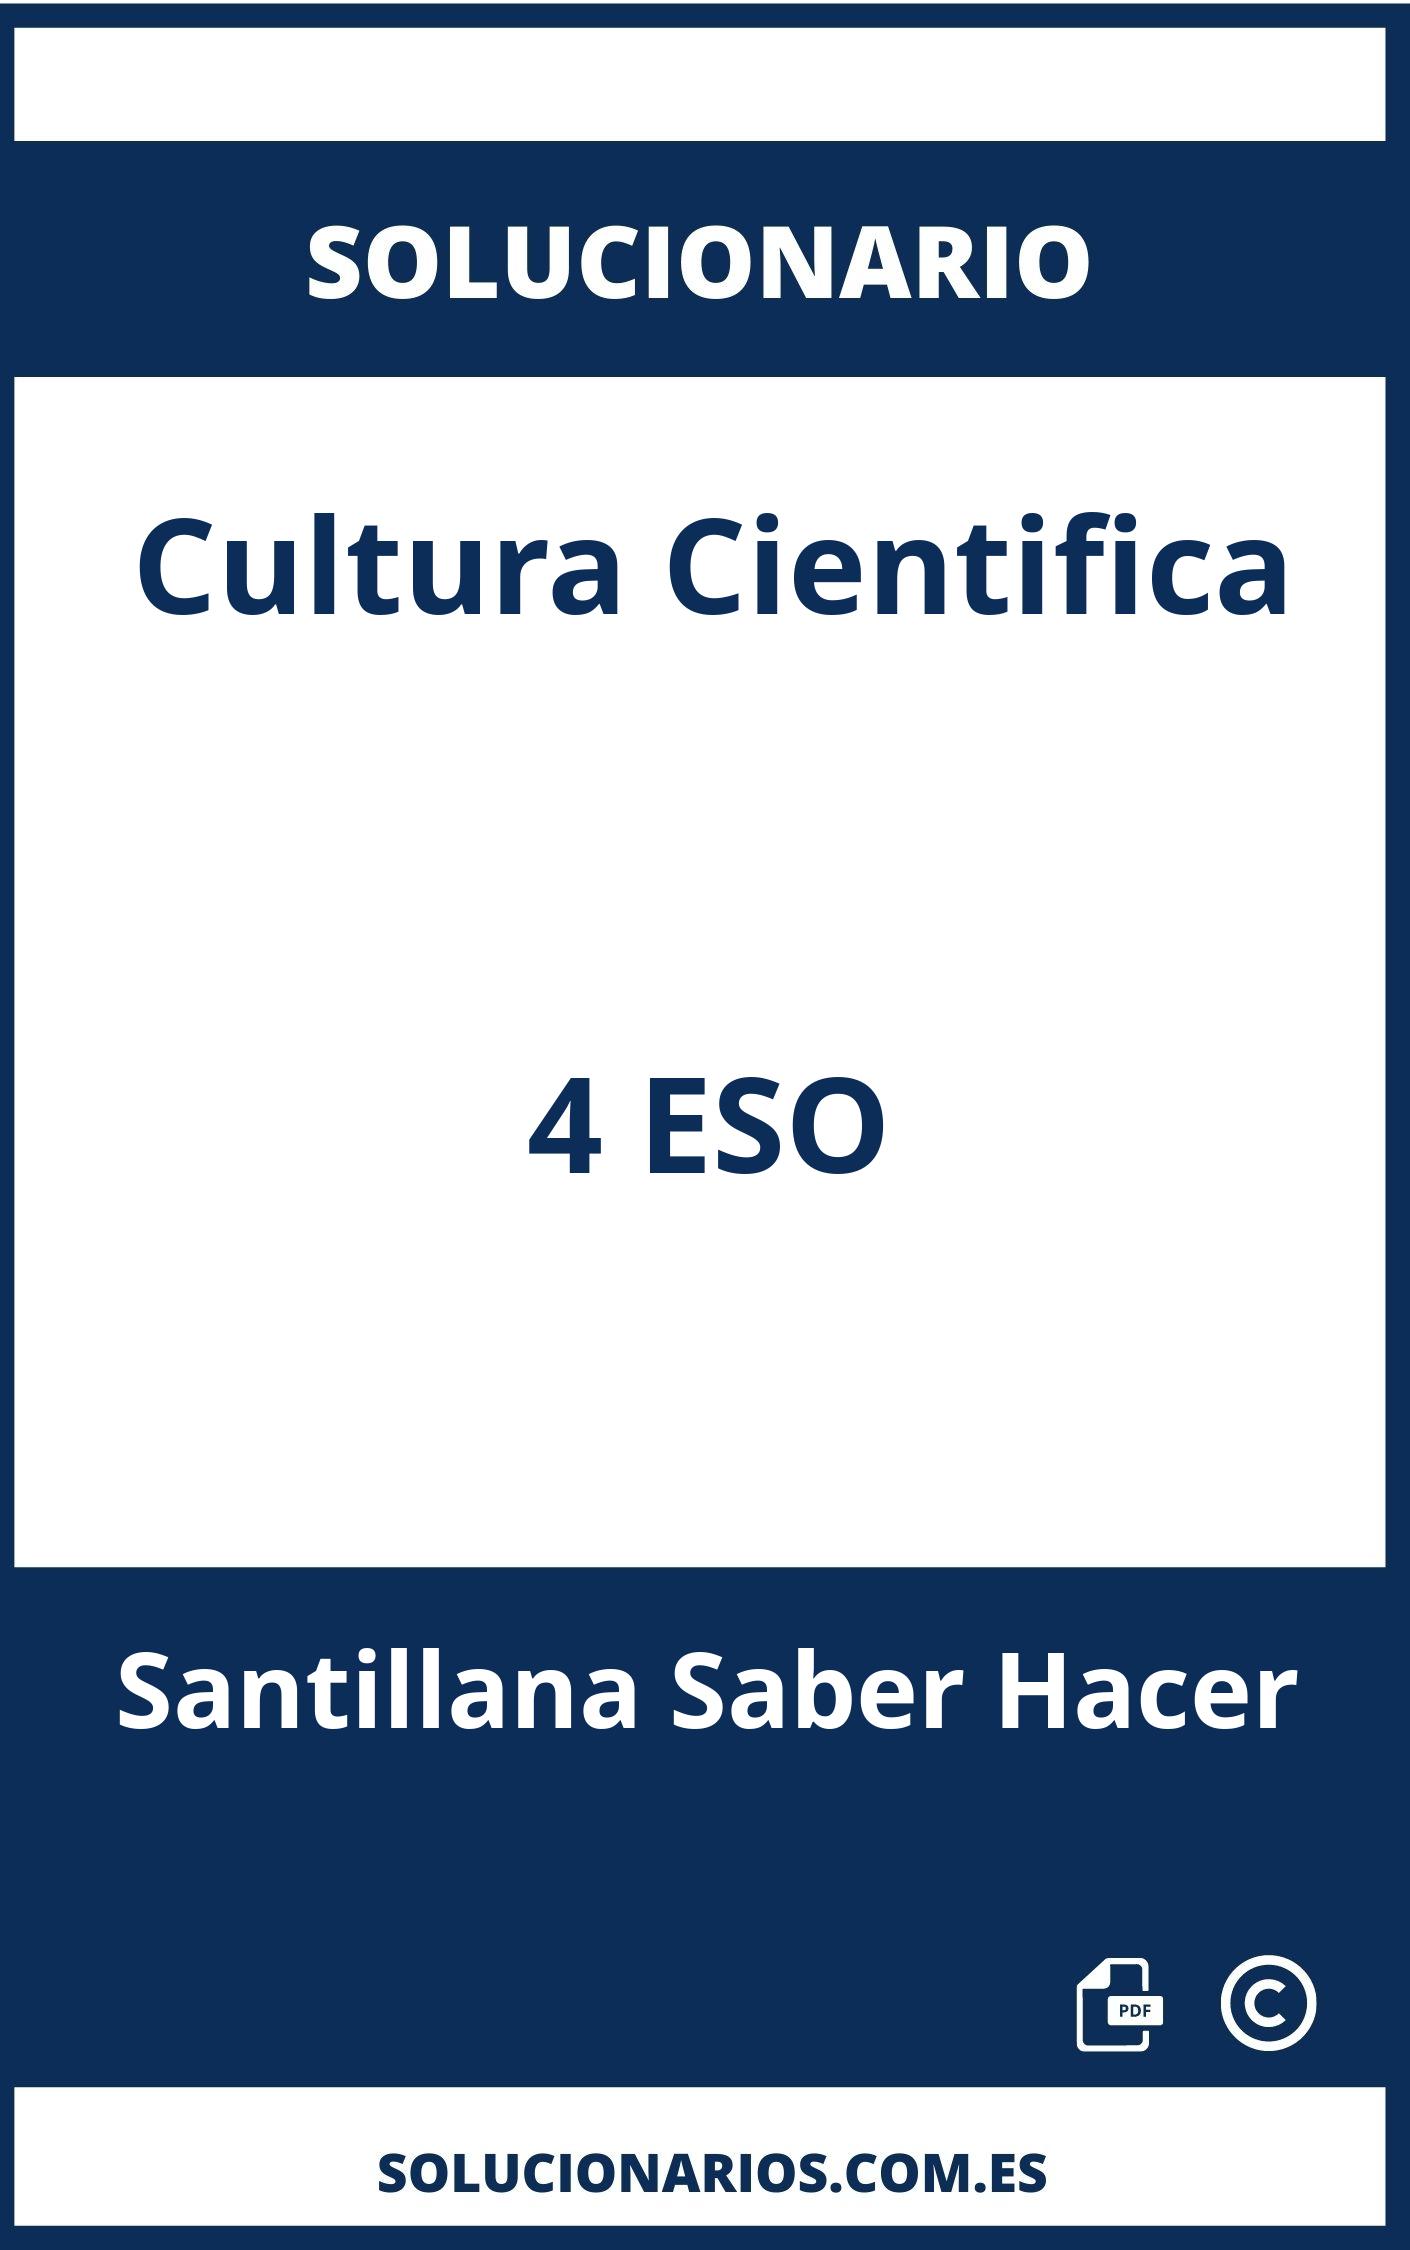 Solucionario Cultura Cientifica 4 ESO Santillana Saber Hacer